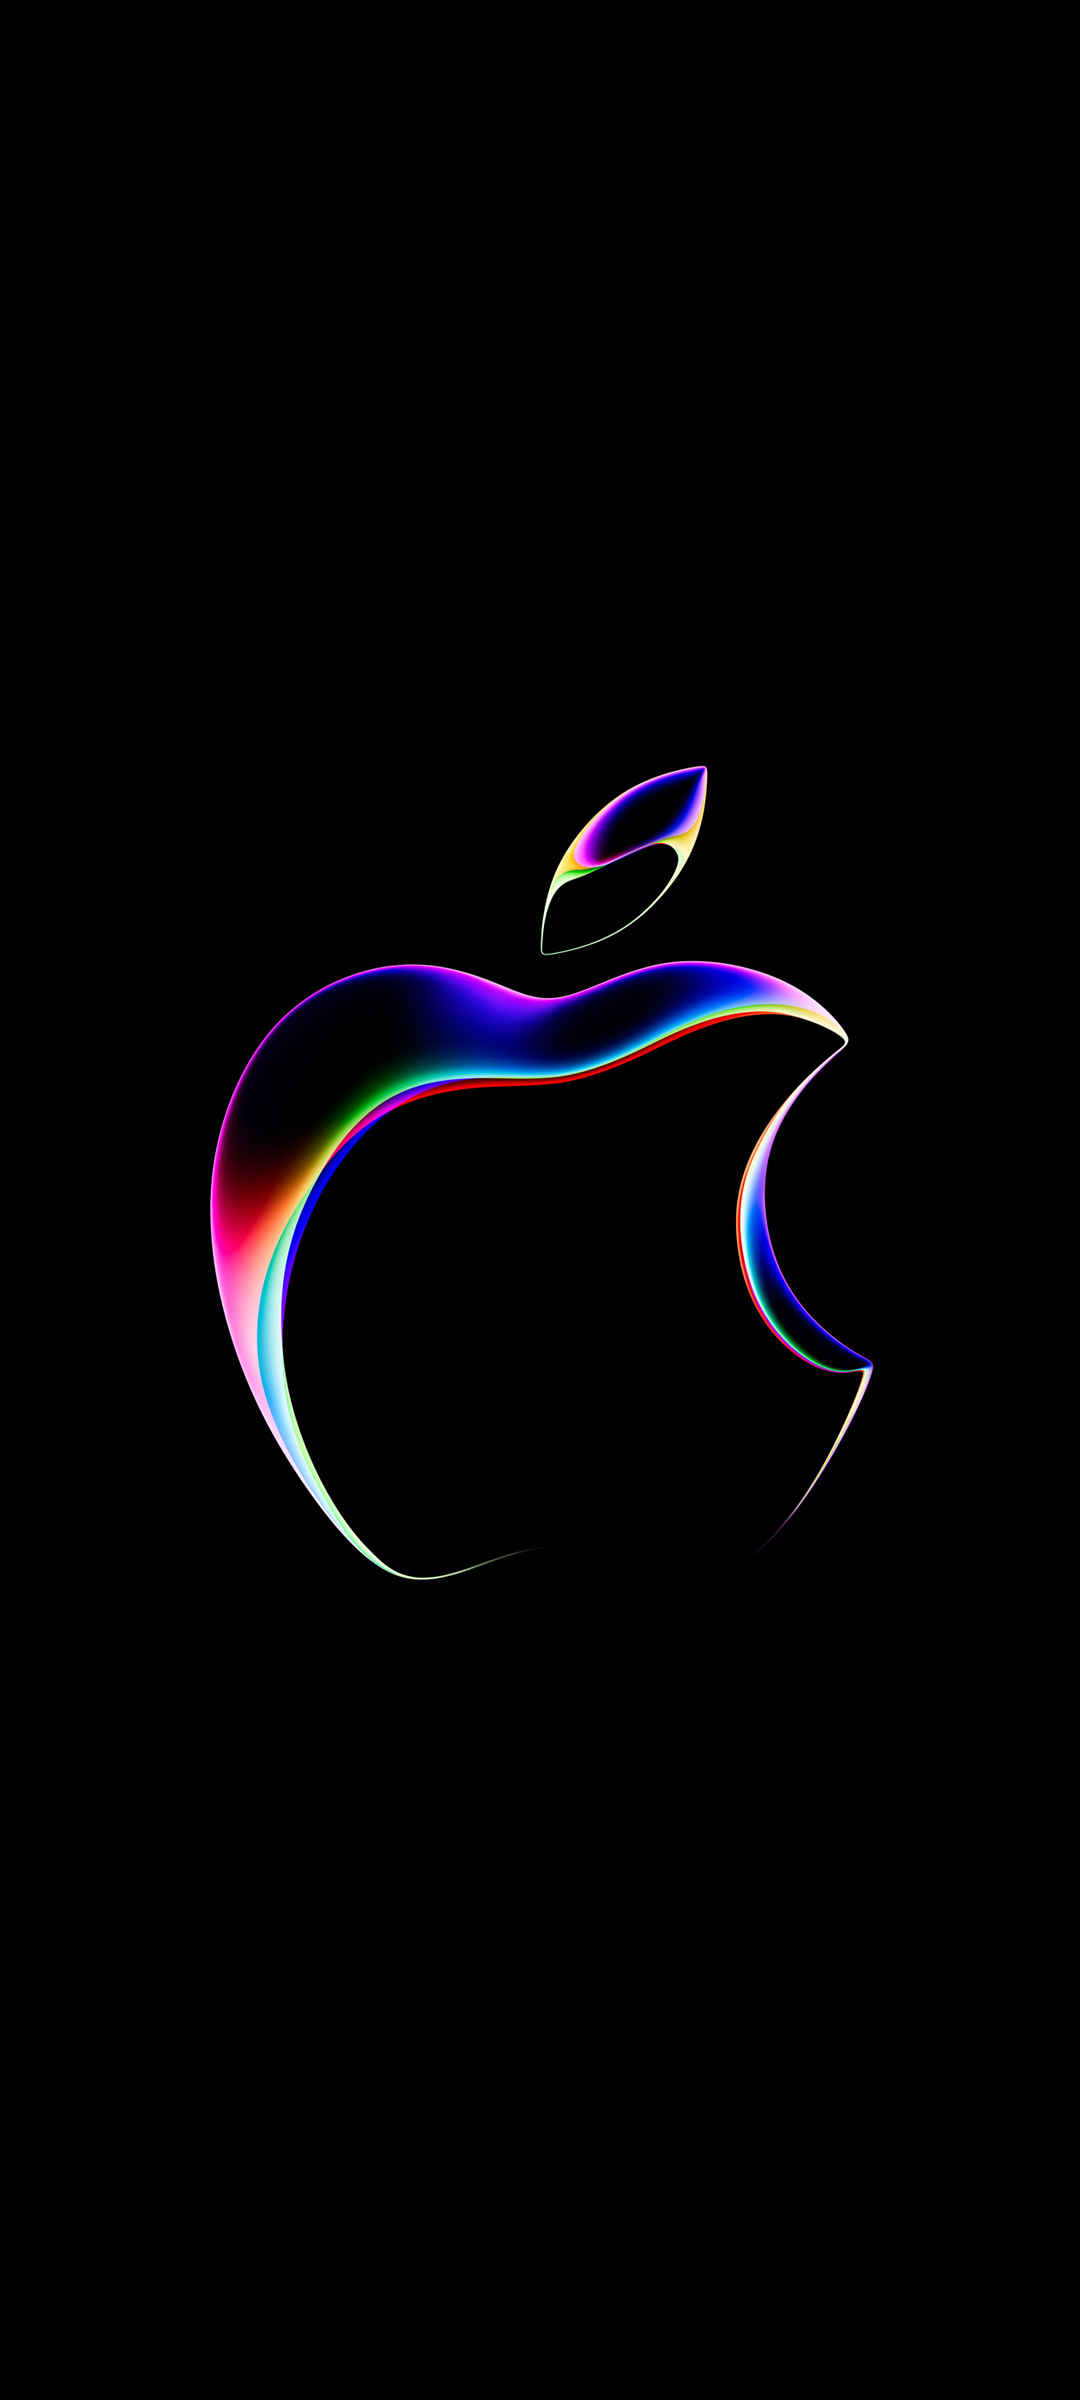 创意苹果logo 黑色背景